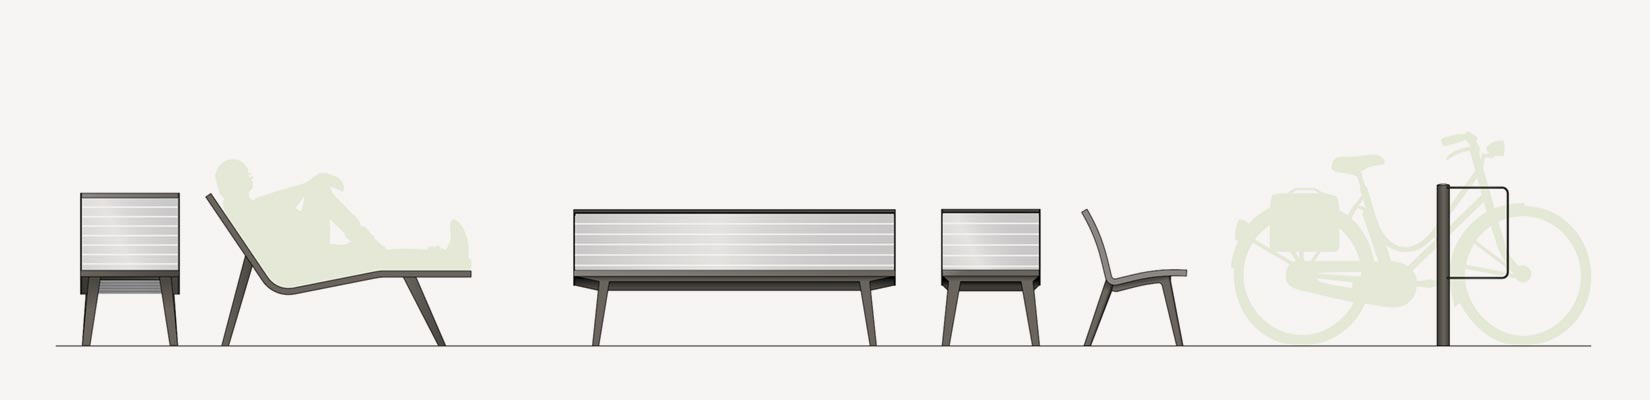 Mobiliers coordonnés a la Chaise longue Michigan aluminium conçu et fabriqué par Aréa mobilier urbain